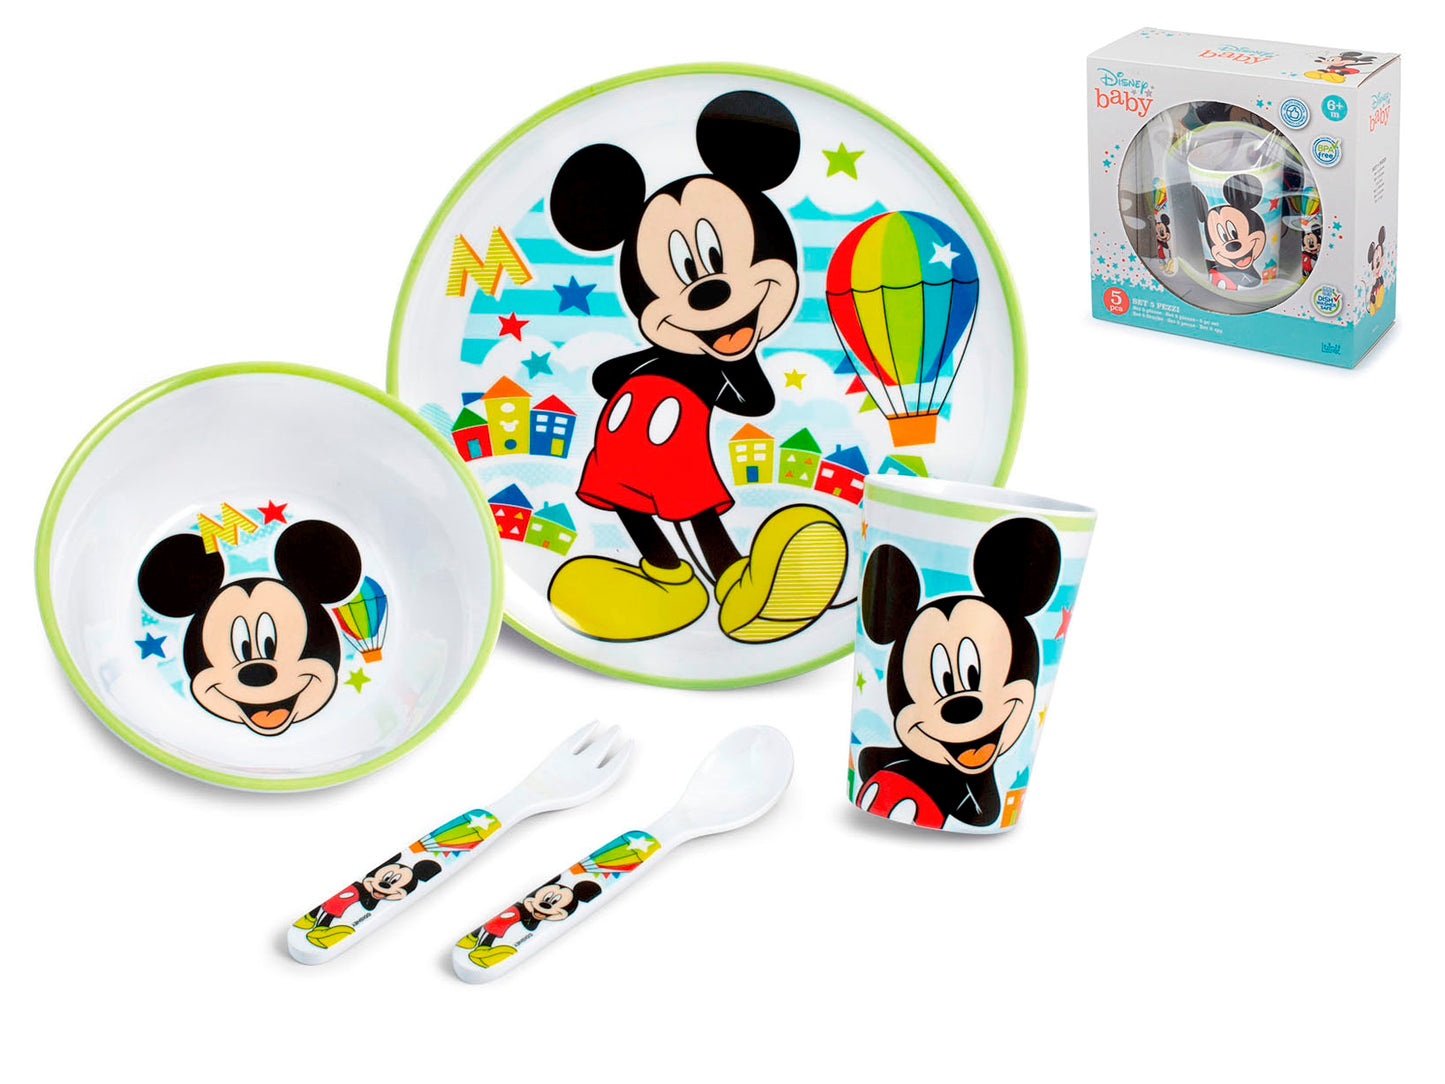 Confezione 5 pezzi  Mickey Simply Disney Lulabi  in melamina decorata assortita.COLLO DA 6 CONFEZIONI